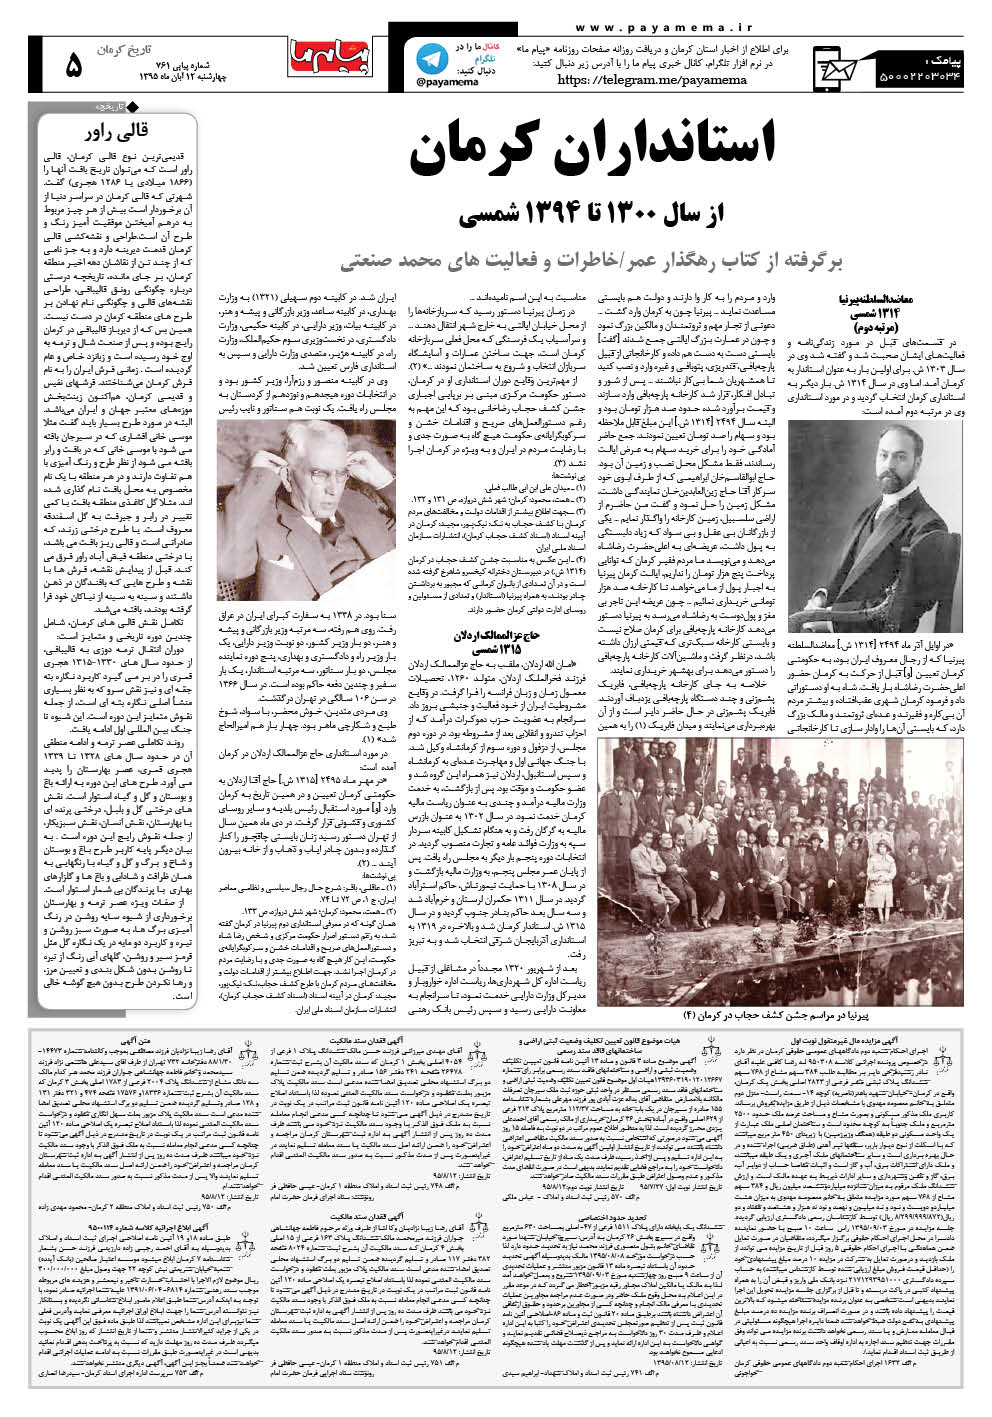 صفحه تاریخ کرمان شماره 761 روزنامه پیام ما